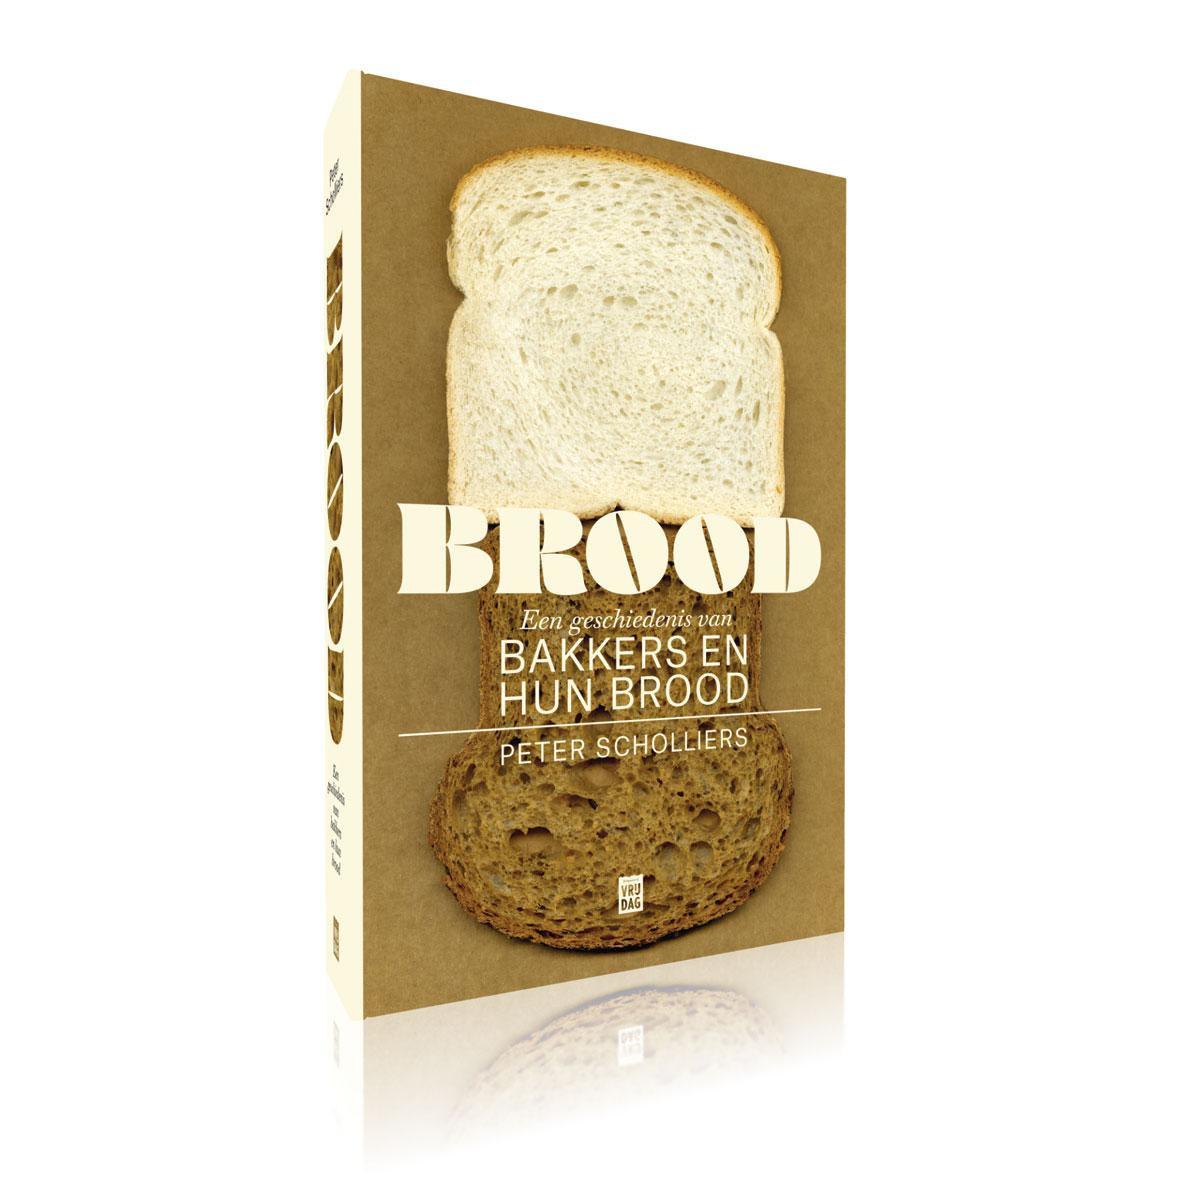 Peter Scholliers, Brood, een geschiedenis van bakkers en hun brood, Vrijdag, 343 blz, 24,95 euro.